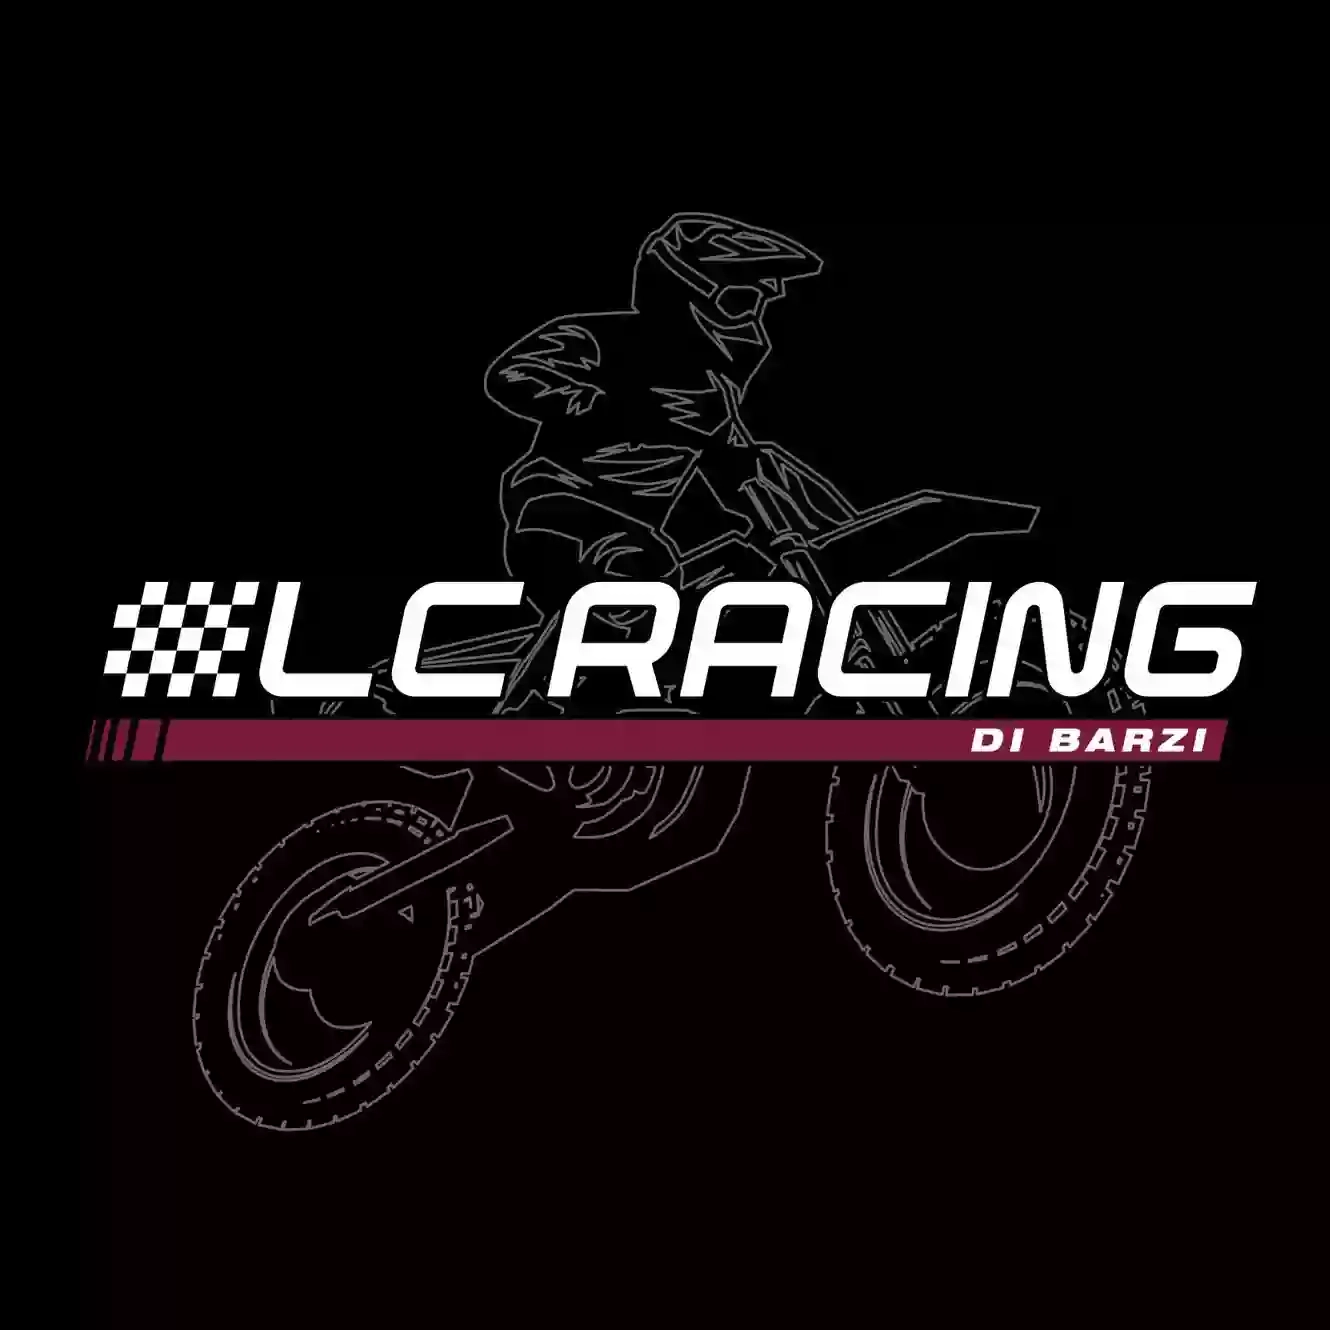 LC racing